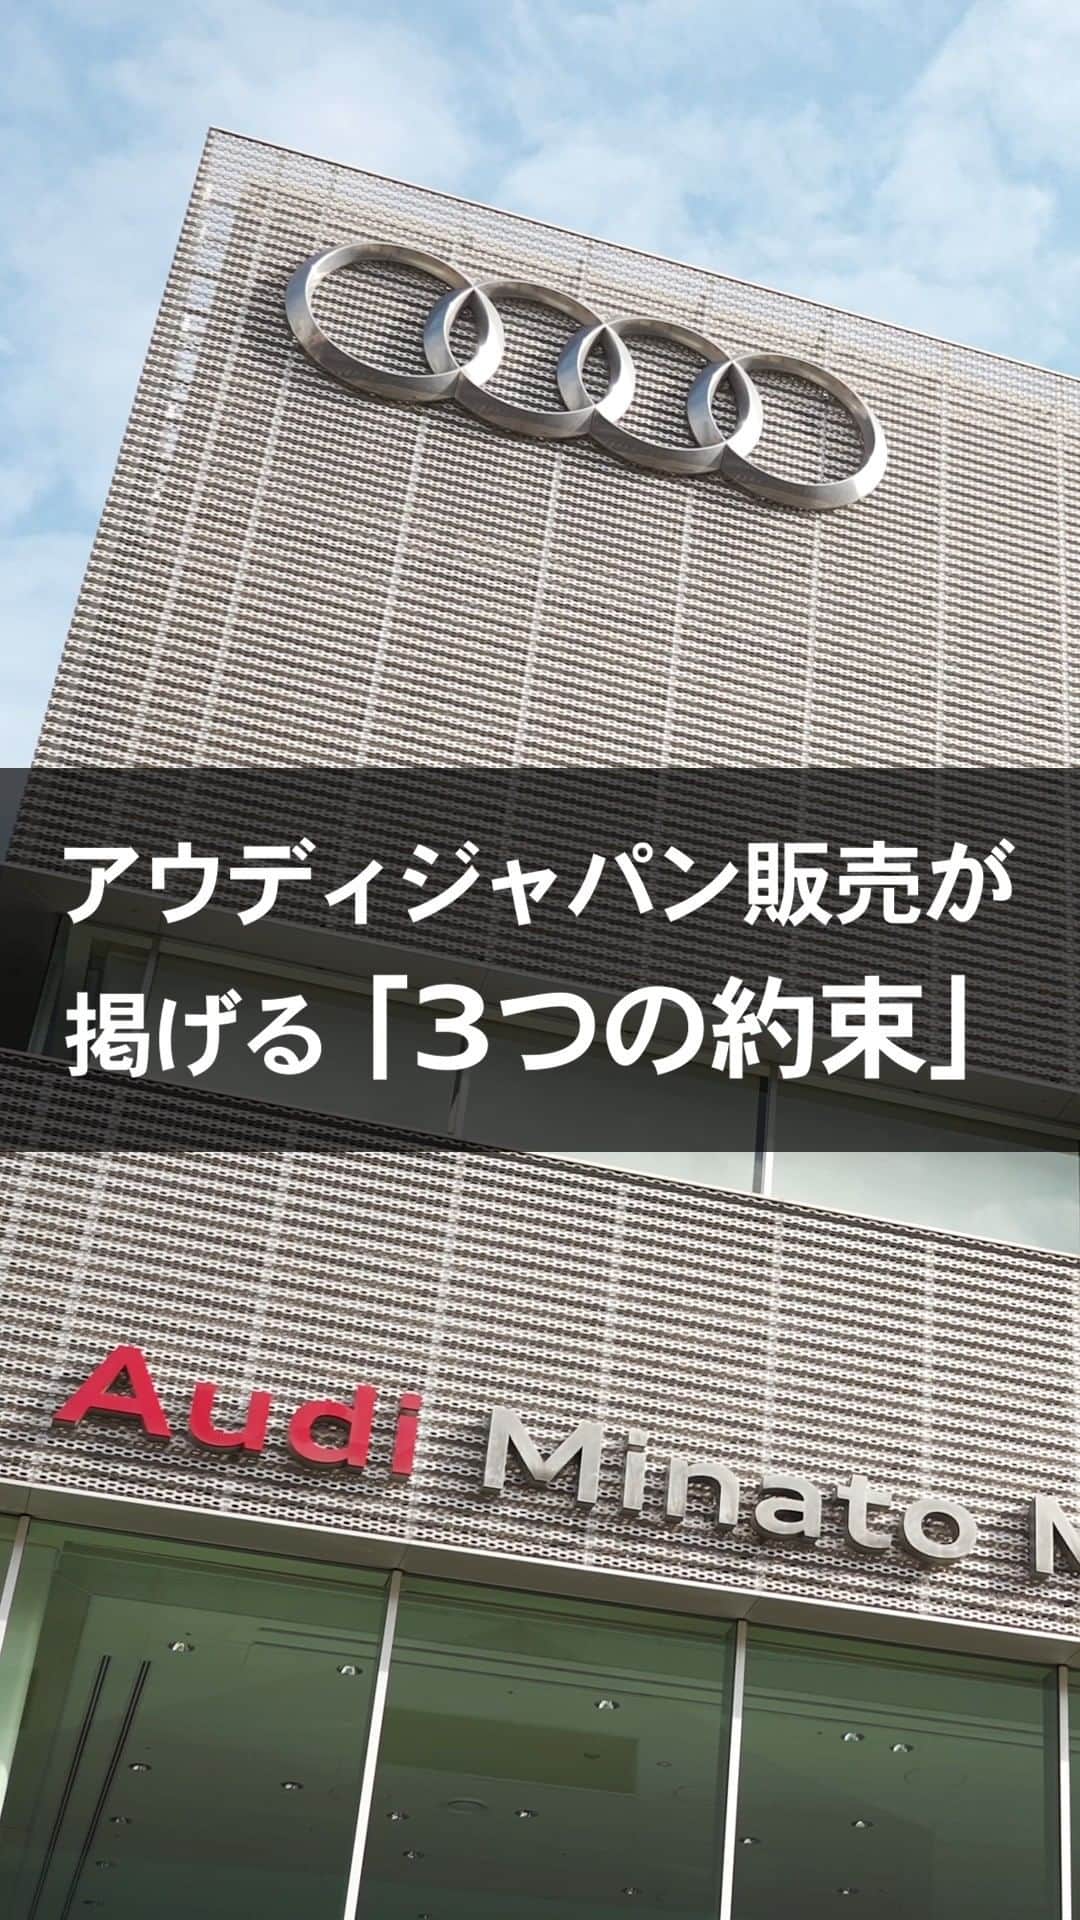 Audi Japan Sales / アウディジャパン販売のインスタグラム：「【AJSの「3つの約束」】  AJSでは、全てのお客様にご満足いただくために安心・安全・スピーディの「3つの約束」をもとに、最高のサービスをご提供しております。  首都圏と関西圏でショールームを展開しているAJSネットワークには、多数の優秀なスタッフが在籍しており、世界各国のAudi正規ディーラーがアフターサービスの腕を競う「Audi Twin Cup」で優れた成績を修めた実績があります。 ぜひ、アフターサービスのクオリティをご確認ください！  《3つの約束》 ①安心 お客様のニーズに応じた先進のサービス ②安全 Audiを知り尽くした世界最高峰の技術 ③スピーディ AJSならではのスピーディな整備  アフターサービスの詳細は #AJS のオフィシャルサイトをご覧ください。  @audi.japan.sales  #Audi  #AJS #myaudi #audistyle #car #carstagram  #アウディ #ドライブ #車 ＃試乗 #愛車 #外車 #ドイツ車 #車好き #車好きな人と繋がりたい #アウディ女子 #車好き男子 #メンテナンス #アフターサービス」